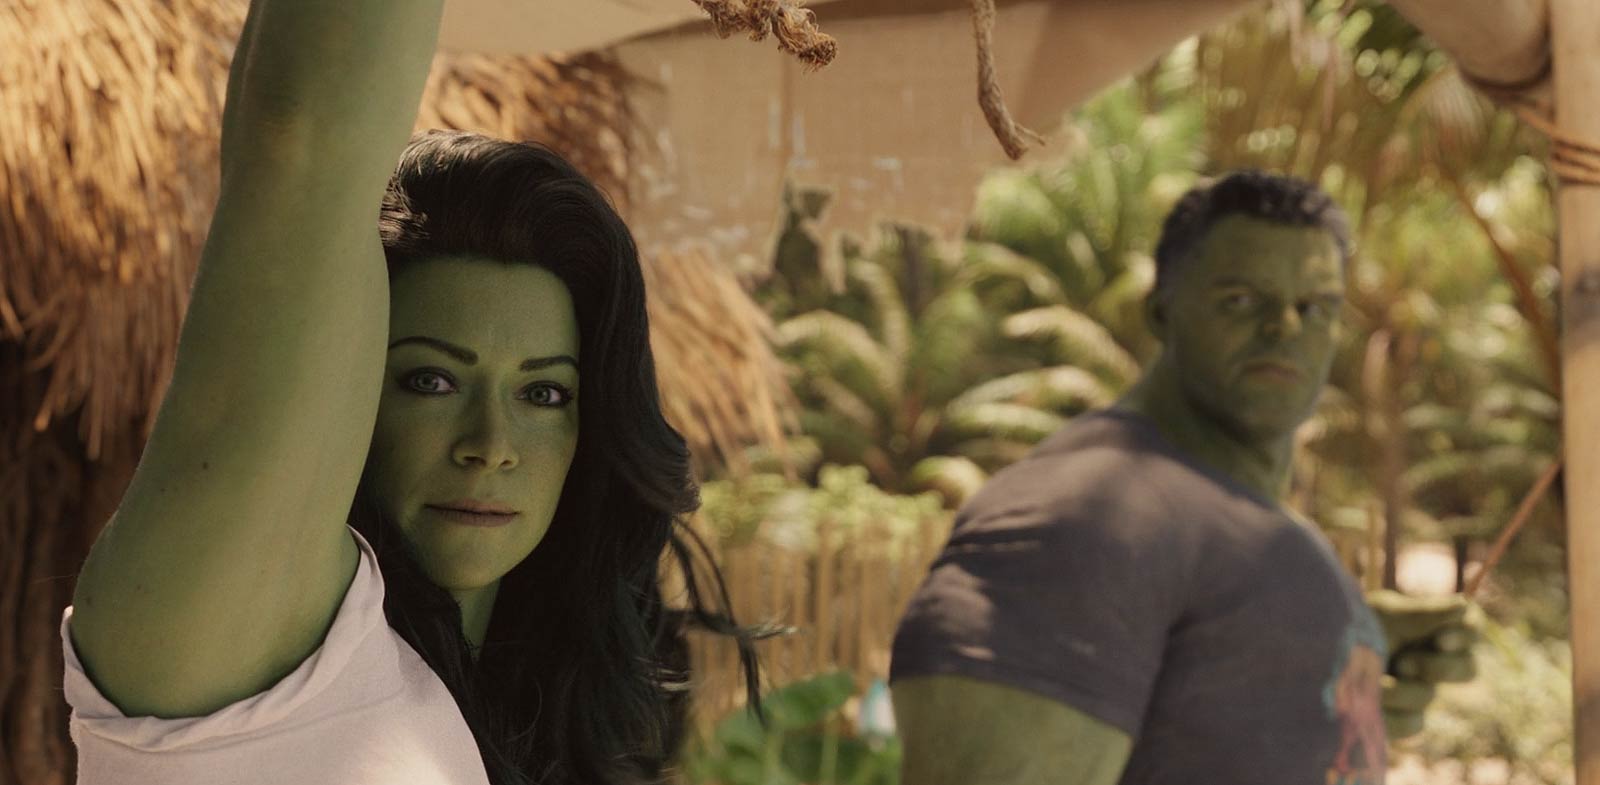 Mark Ruffalo as The Hulk and Tatiana Maslany as Jennifer Walters in She-Hulk: Attorney at Law (2022)